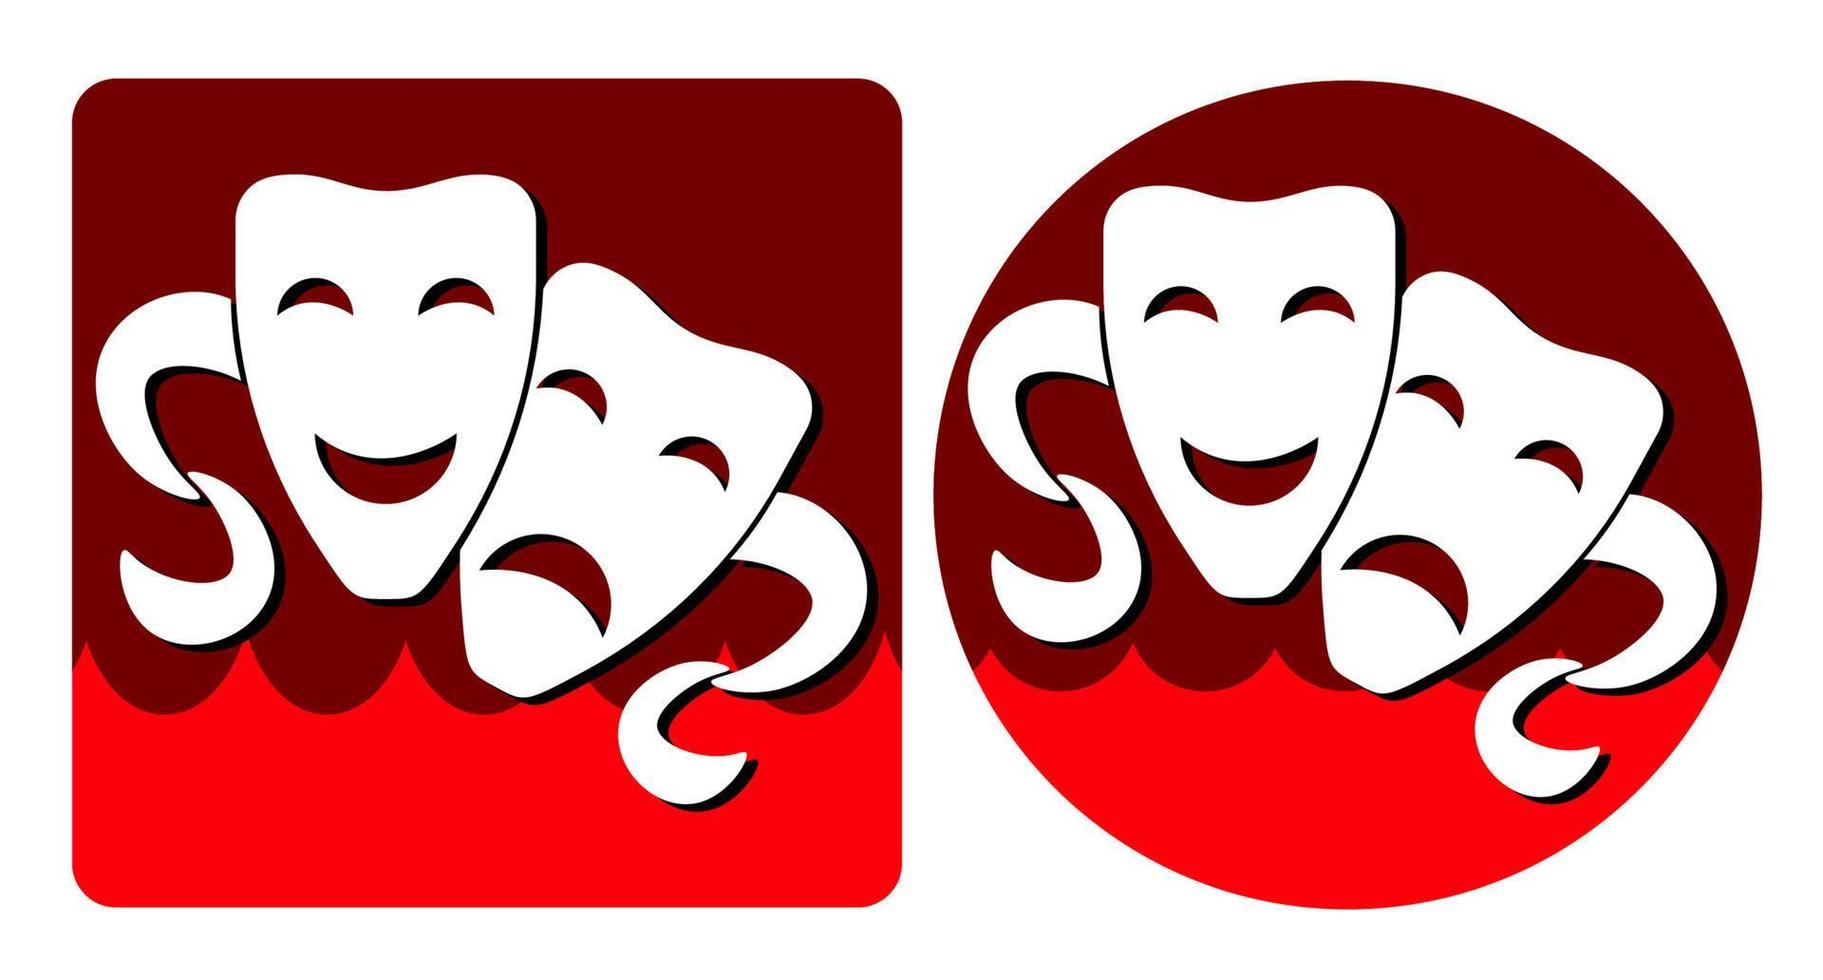 weiße Comedy und tragische Theatermasken auf rotem Grund in Form von Logos vektor